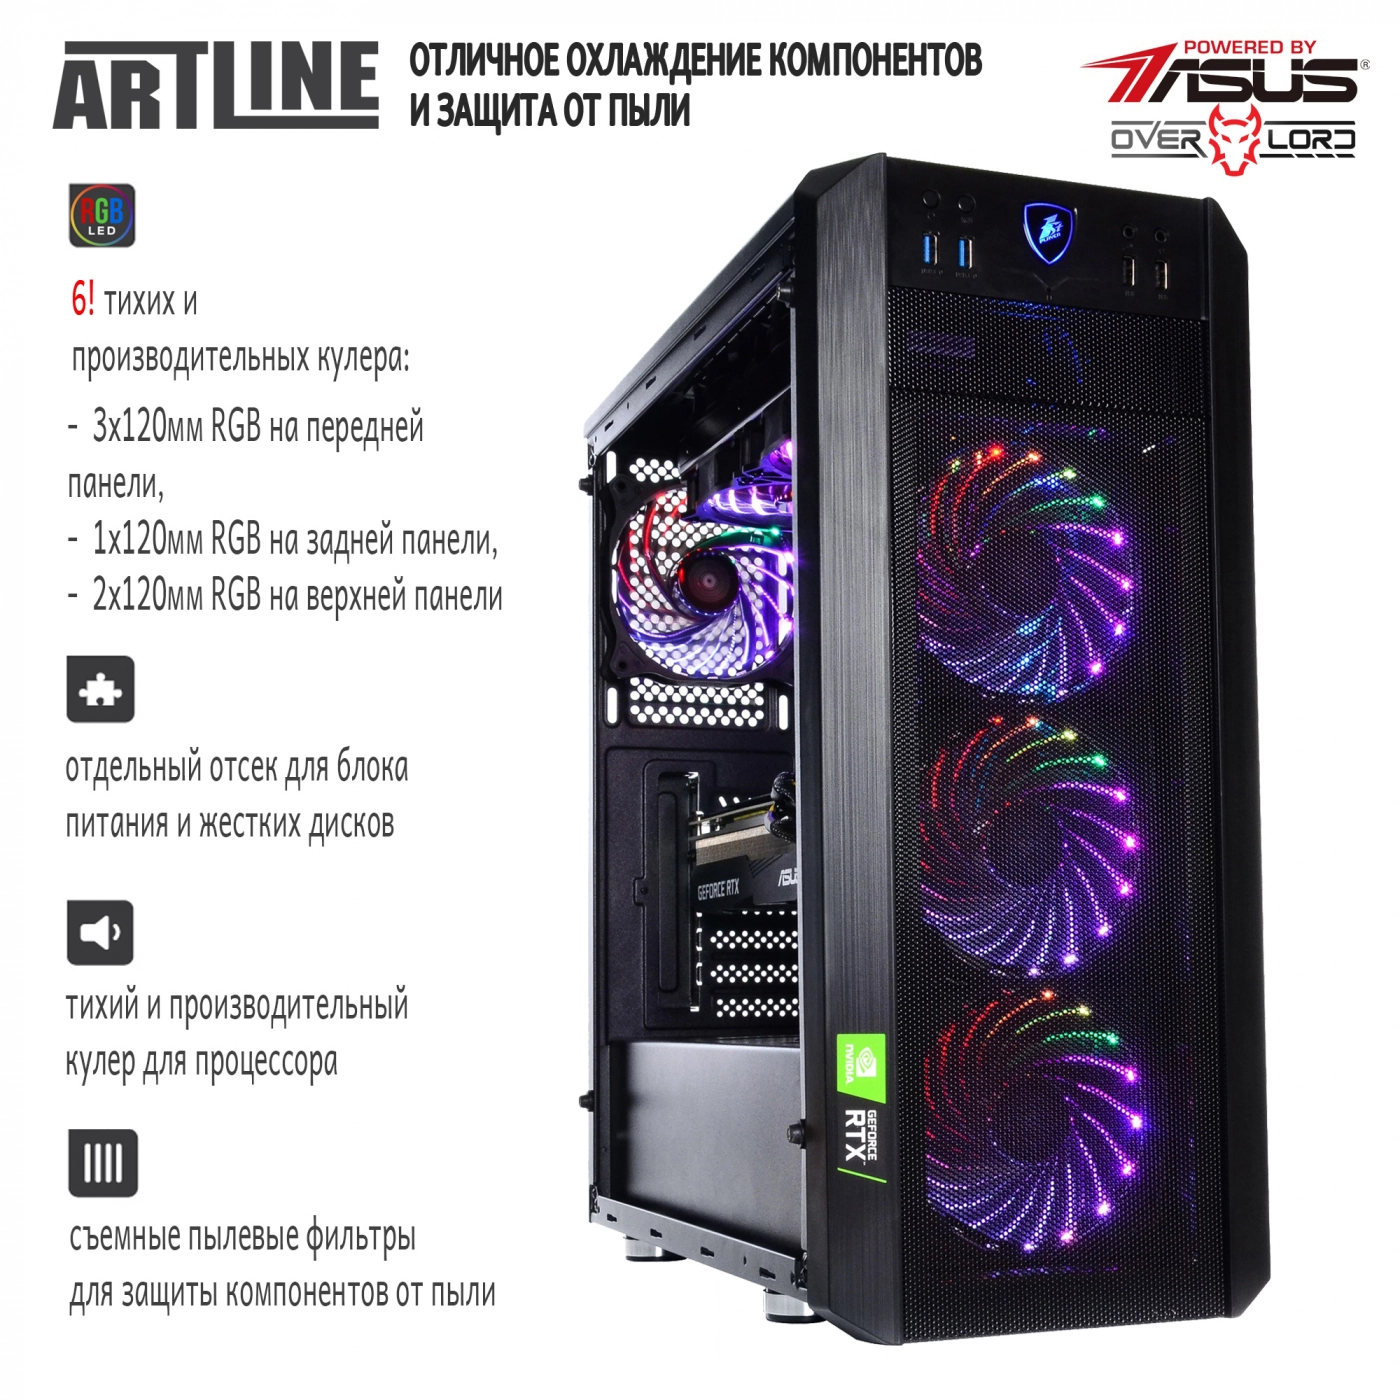 Купить Компьютер ARTLINE Gaming X98v25 - фото 3